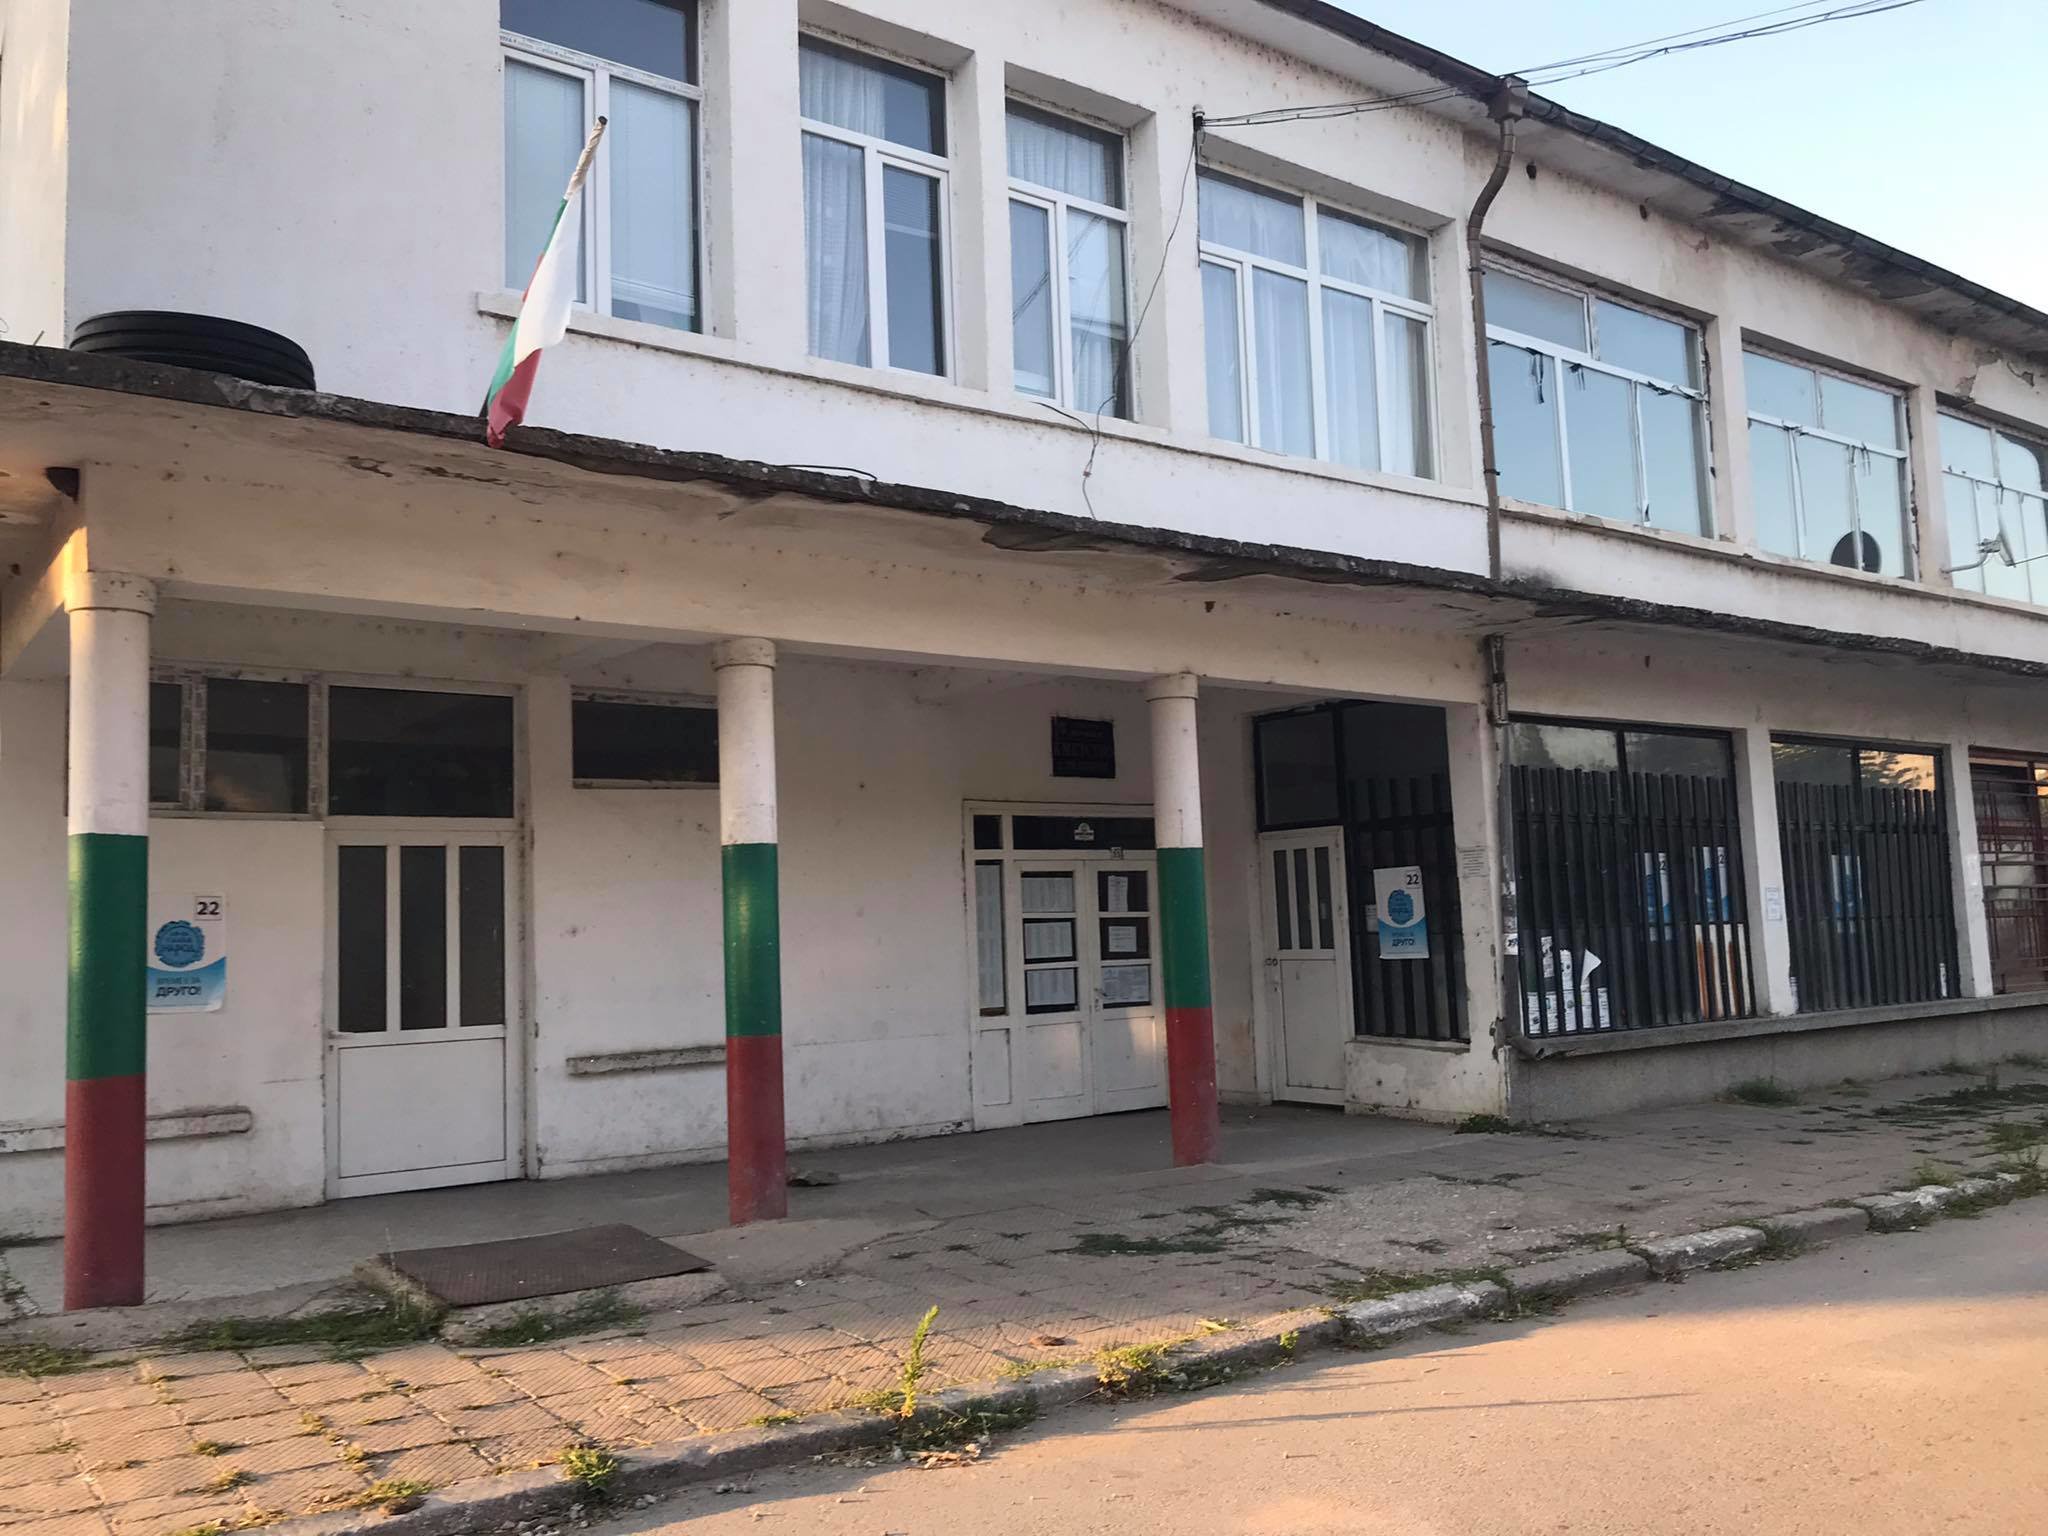 Ниска избирателна активност беляза днешните избори във Врачанско. В селата